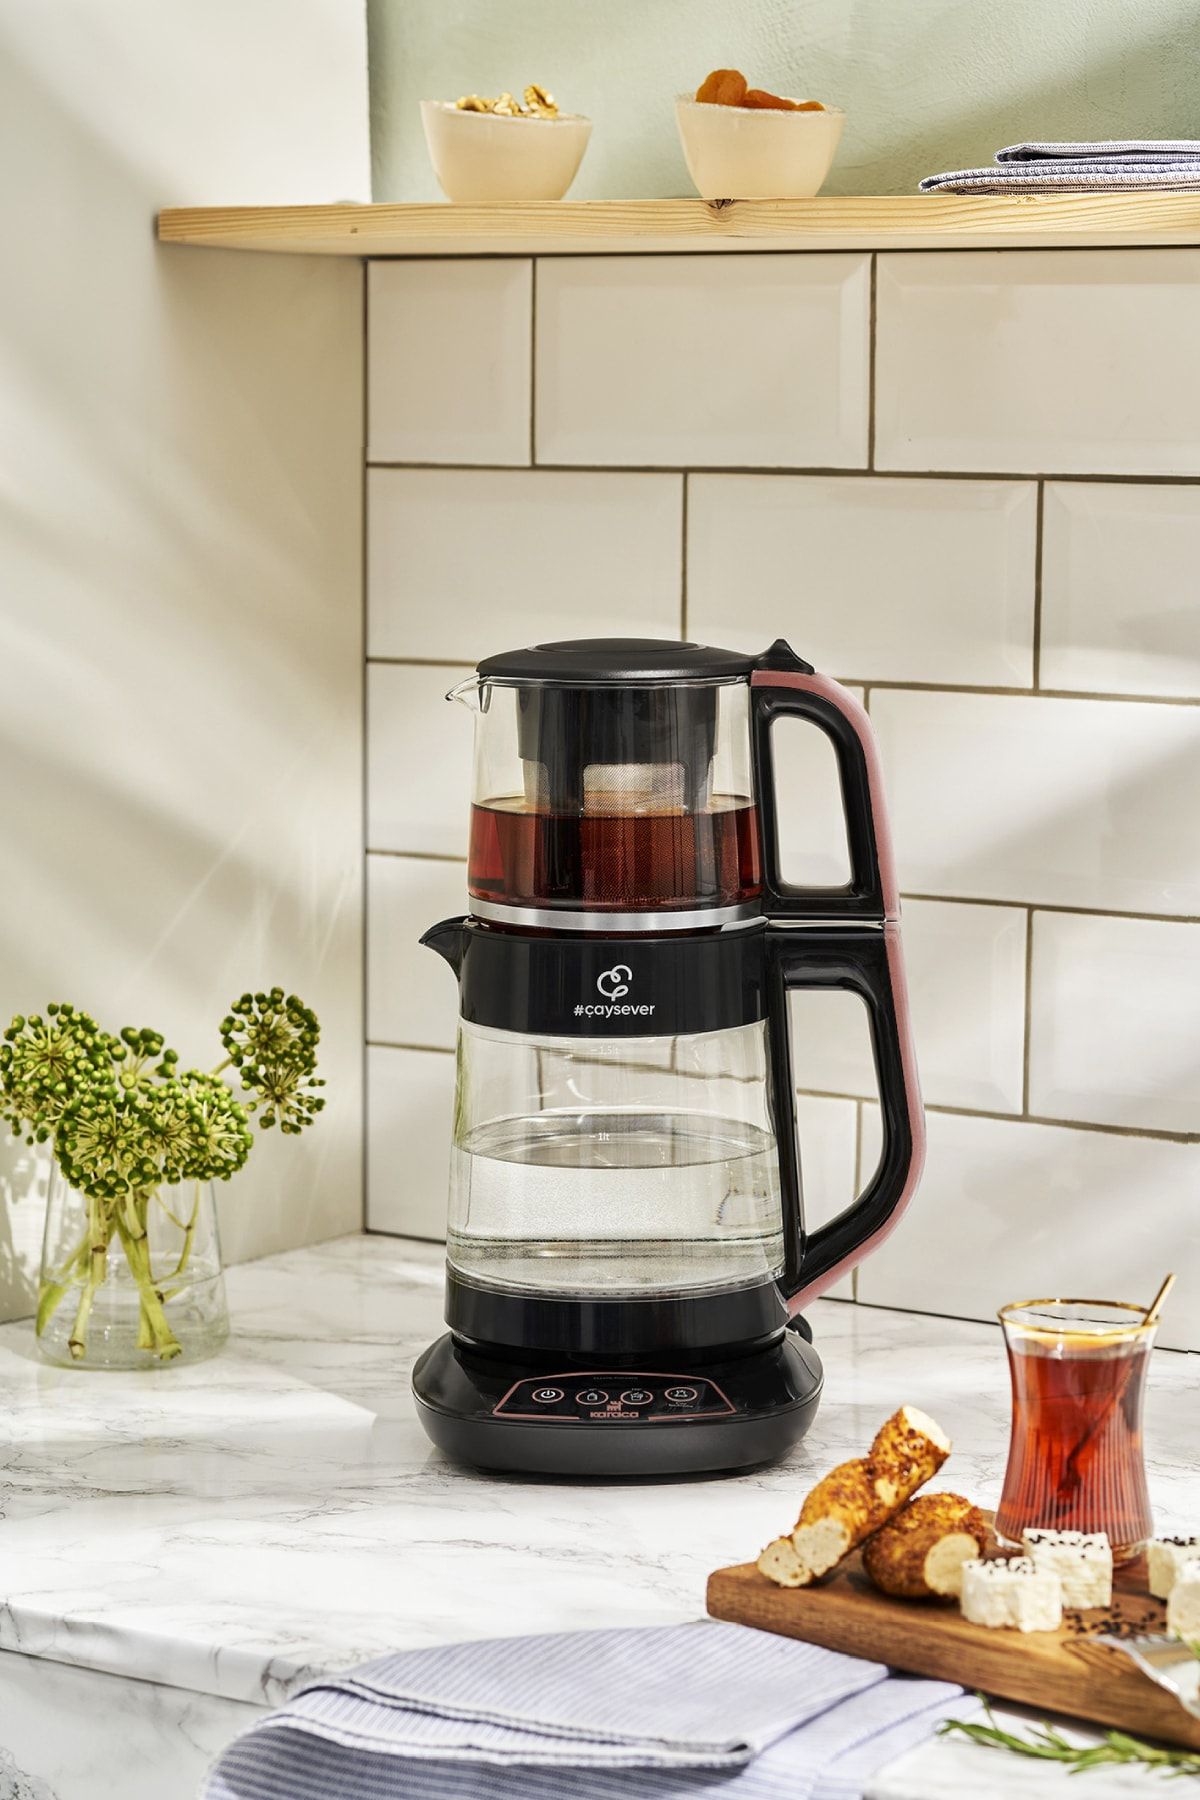 Karaca Çaysever 3 In 1 Konuşan Cam Çay Makinesi Su Isıtıcı Ve Mama Suyu Hazırlama 1700w Rosegold